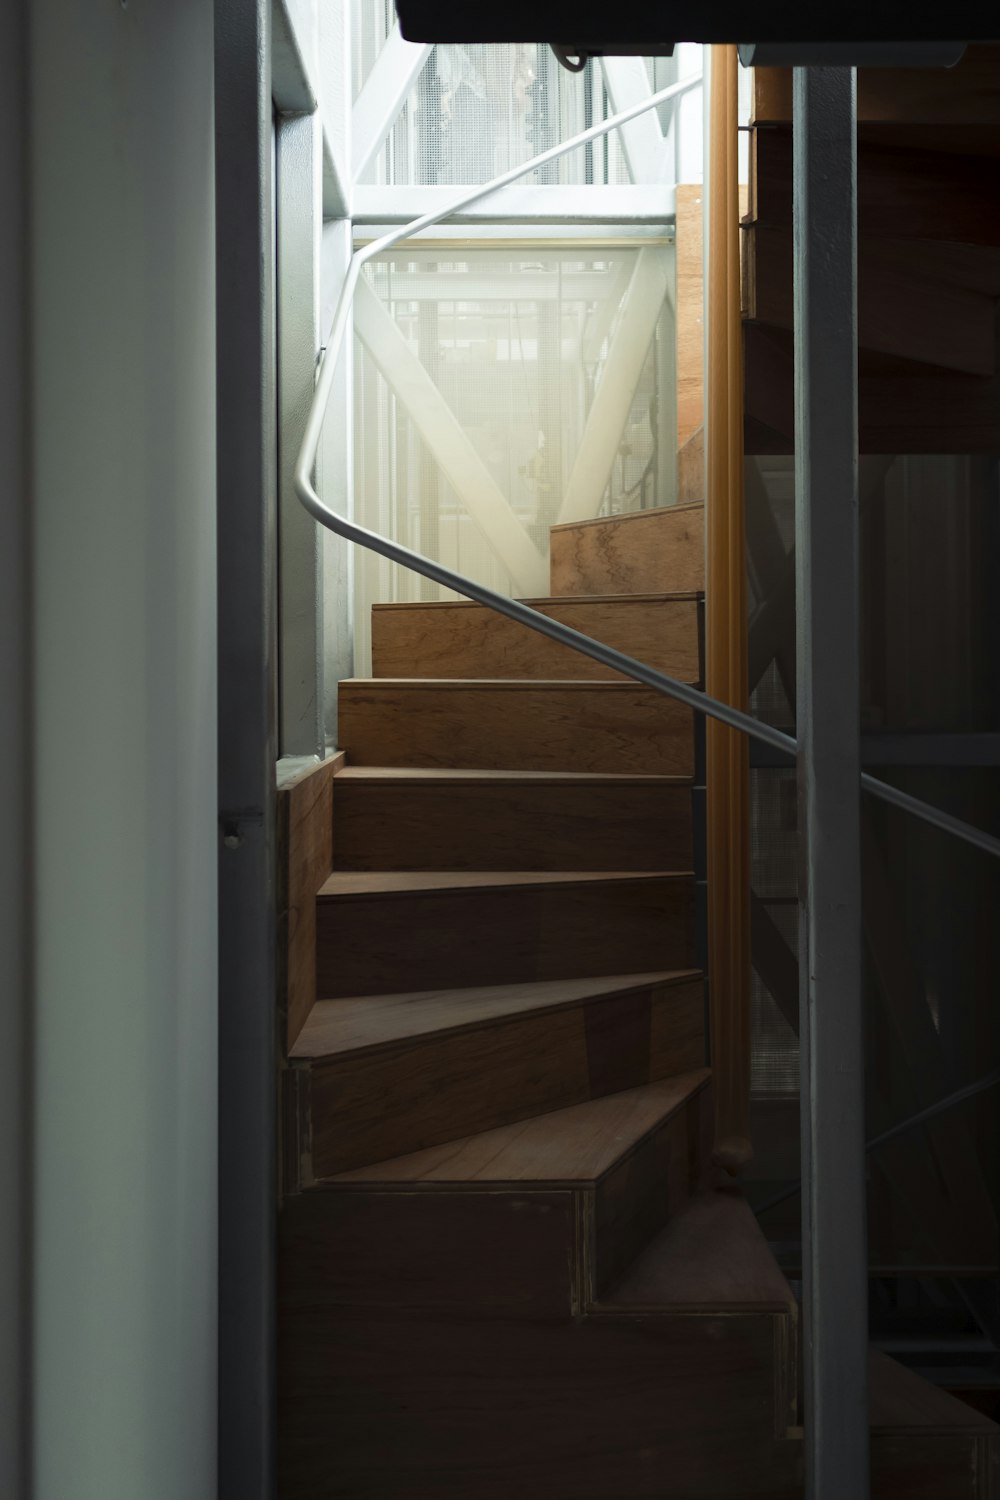 Escalera de madera marrón cerca de la ventana de vidrio